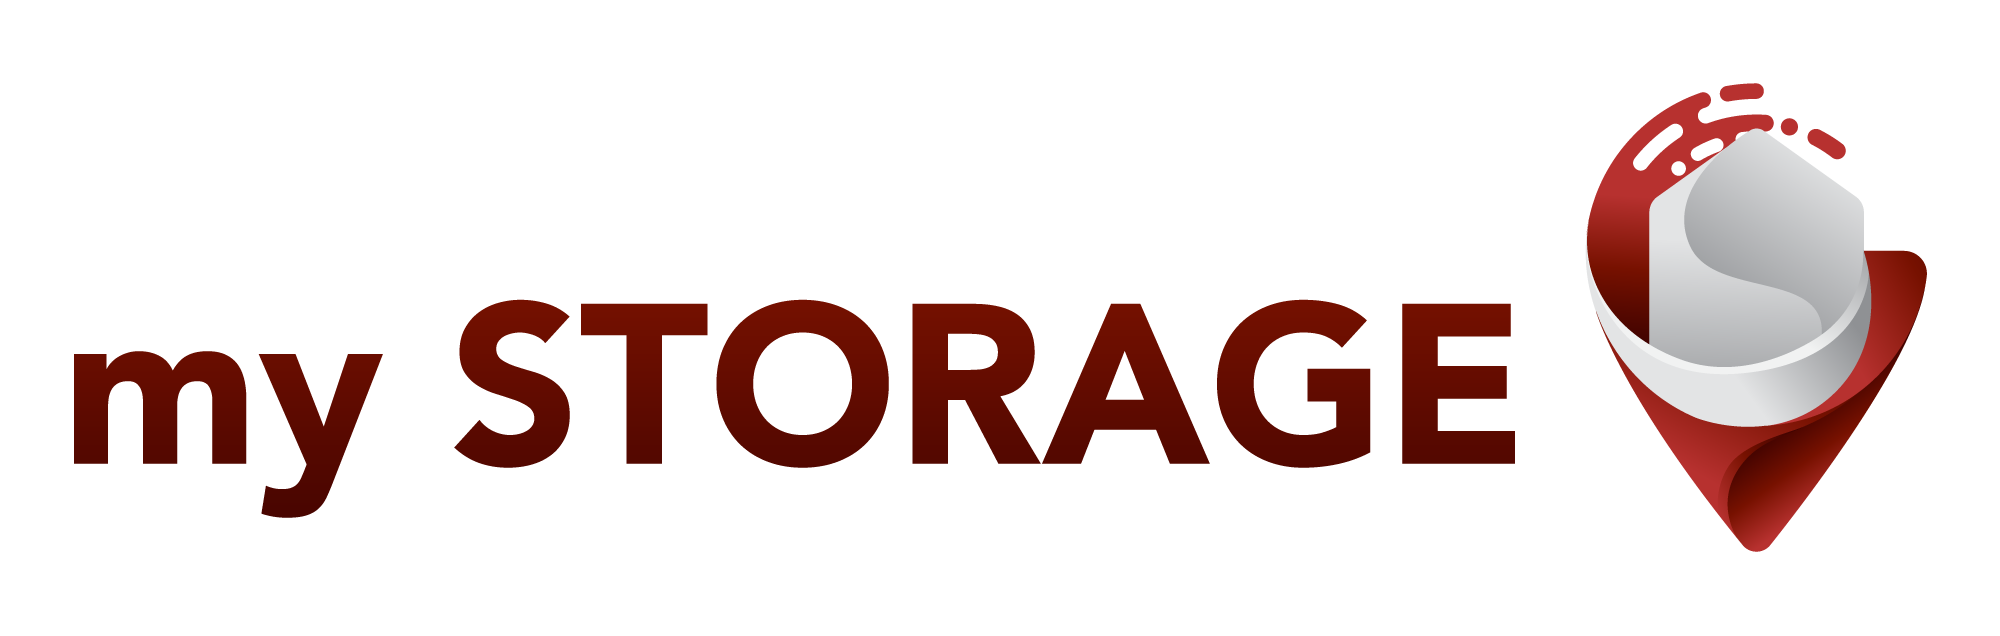 my storage logo